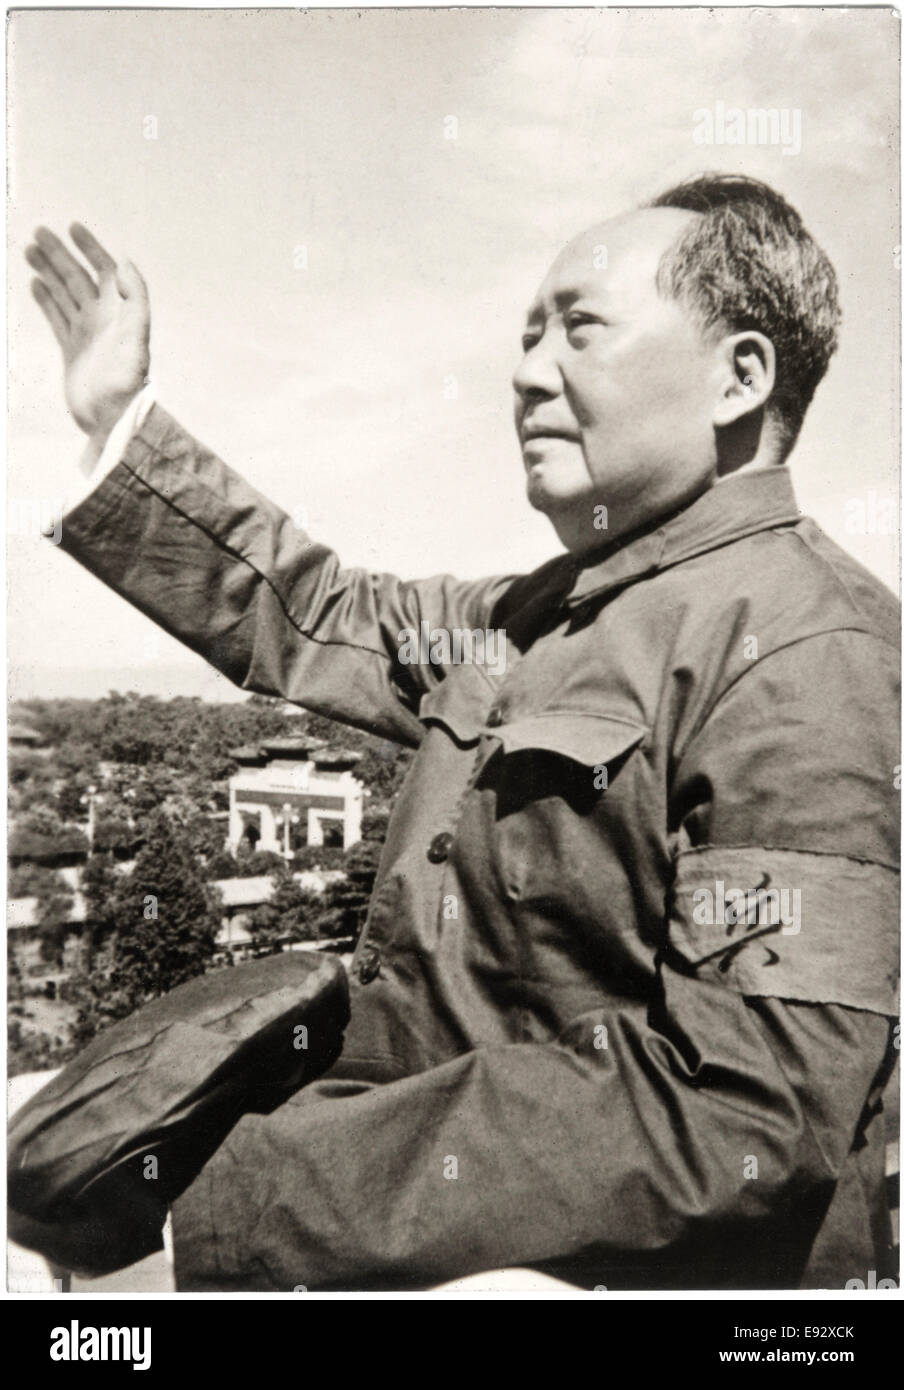 Le président Mao Zedong (1893-1976), fondateur de la République populaire de Chine, Portrait Waving to foule, 1963 Banque D'Images